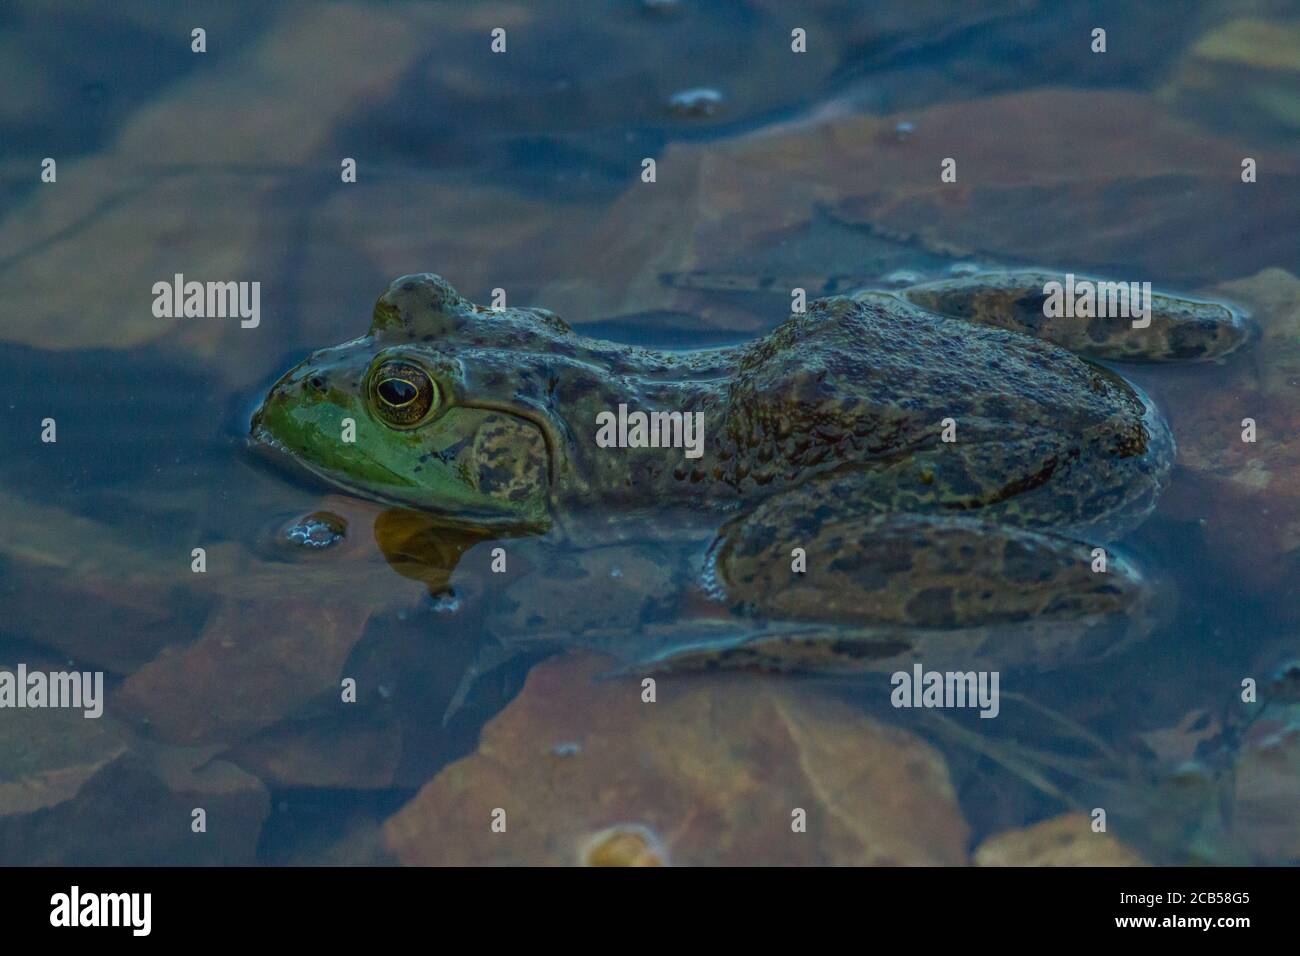 American Bullfrog Foto Stock